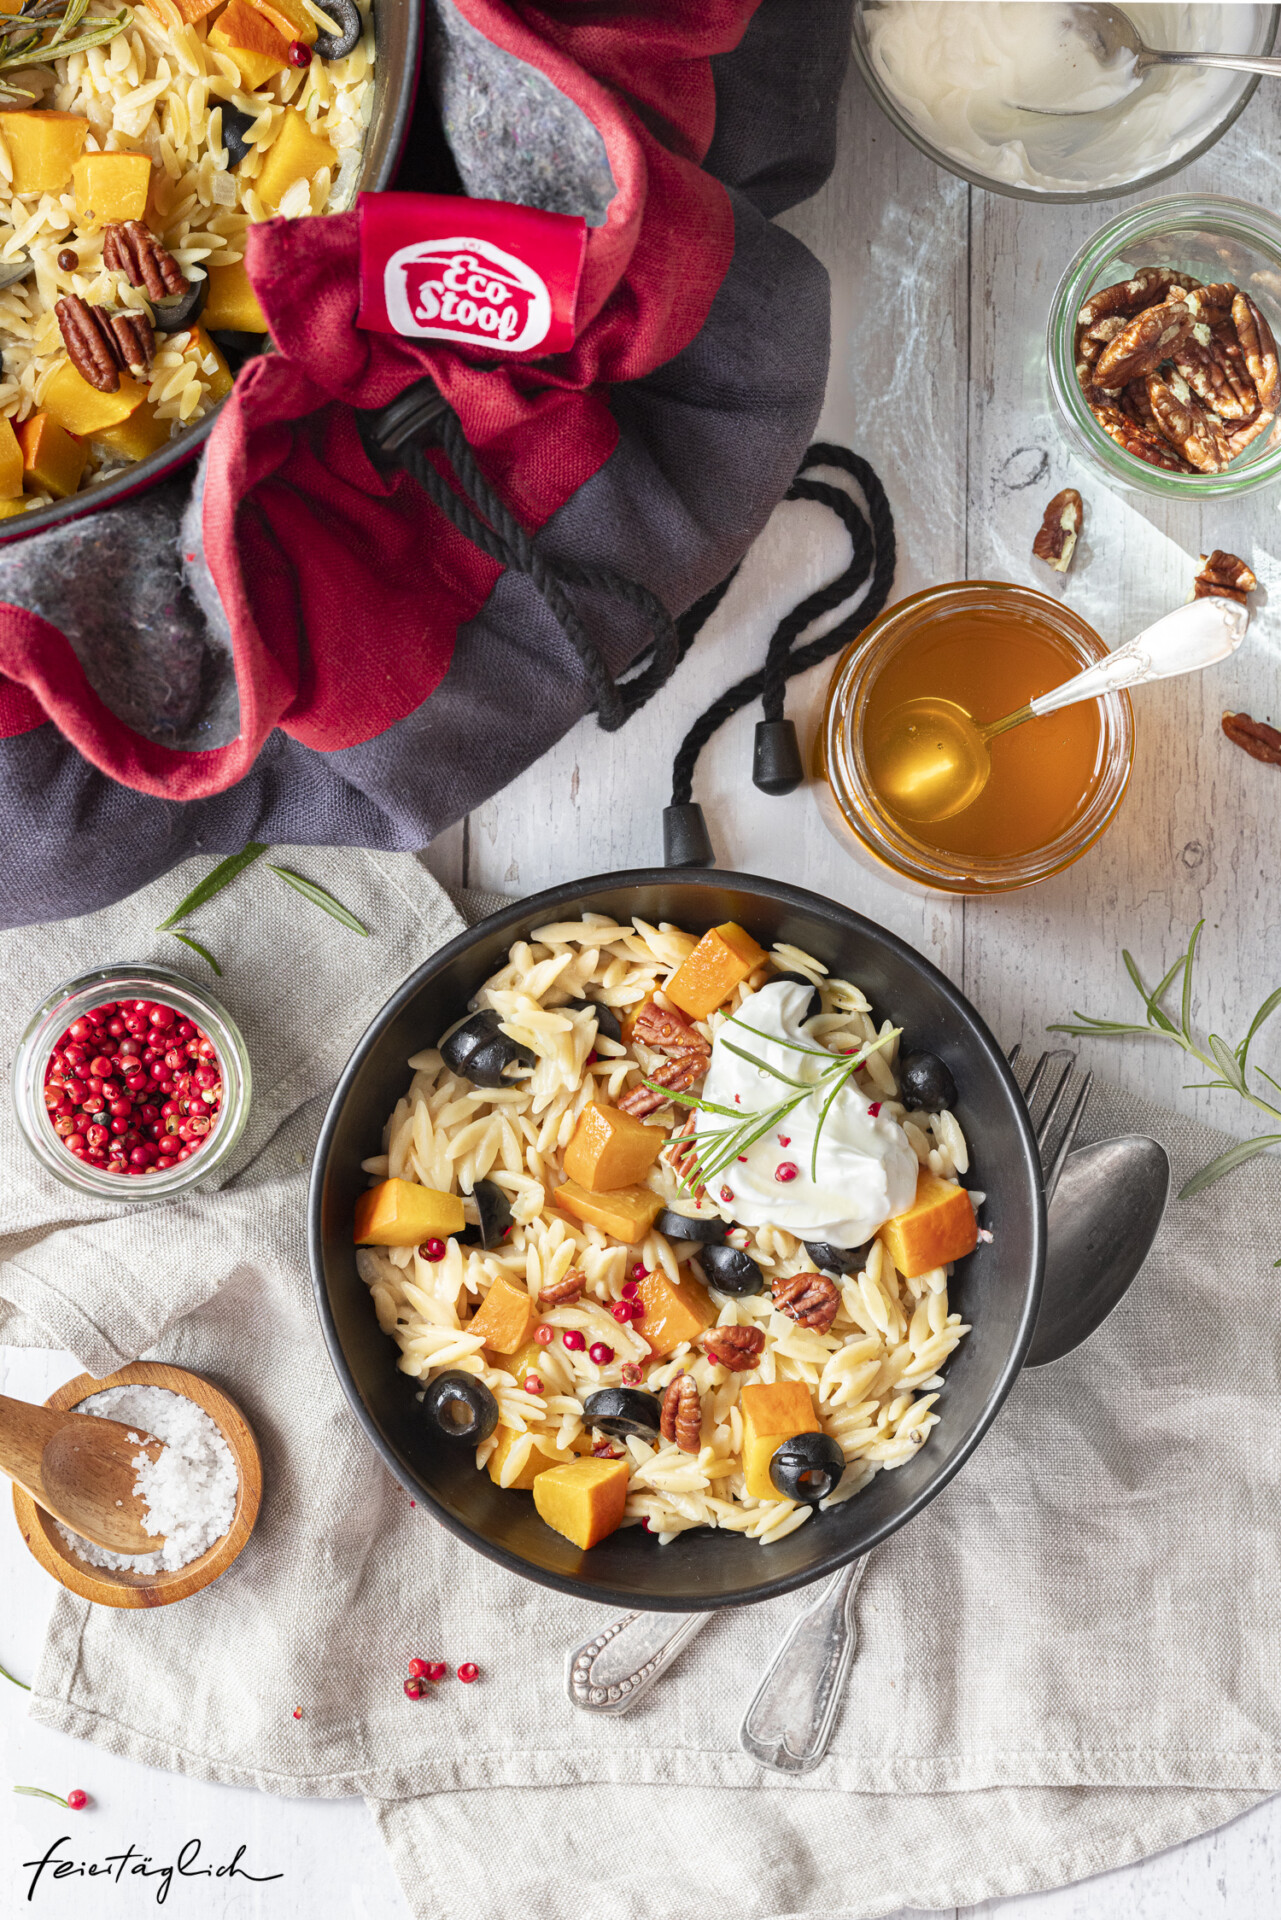 Cremige One Pot Orzo Pasta mit Kürbis, Ziegenfrischkäse & Pekannüssen aus dem EcoStoof®, schnelles und einfaches Rezept im Herbst